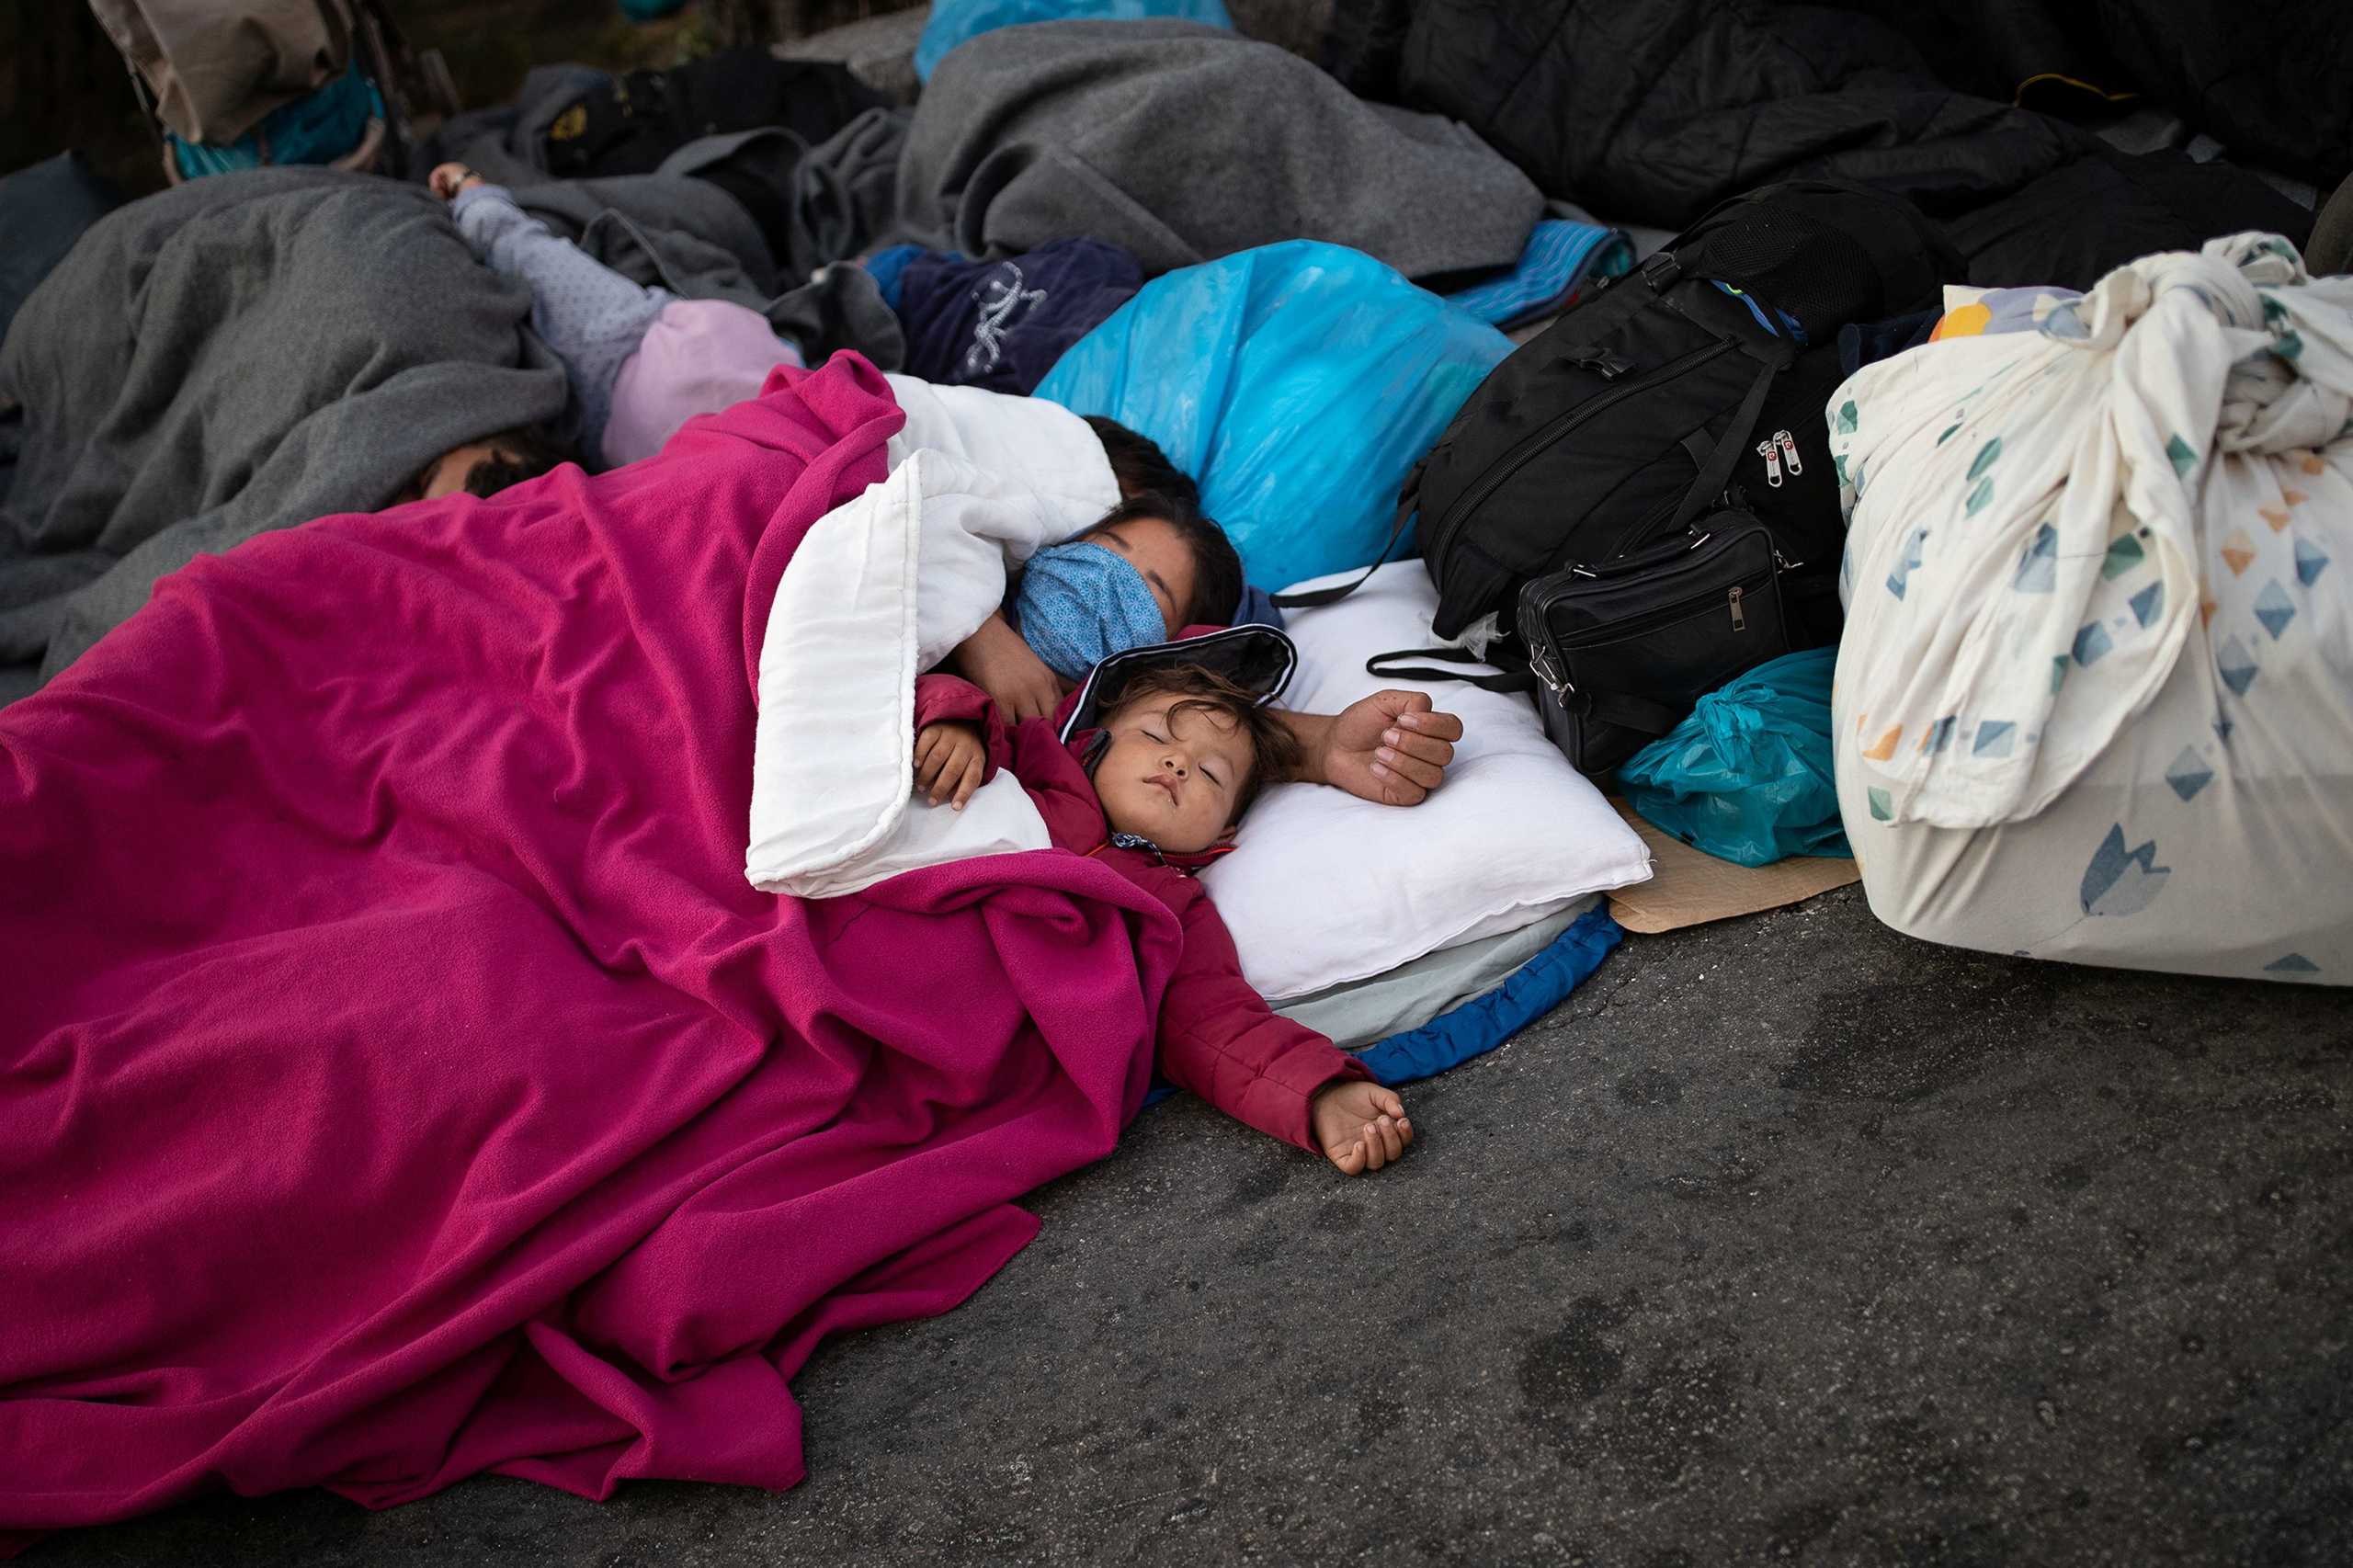 Μόρια: Οι πιο σκληρές εικόνες! Απελπισμένοι άνθρωποι κοιμούνται σε νεκροταφείο και δρόμους (Βίντεο)